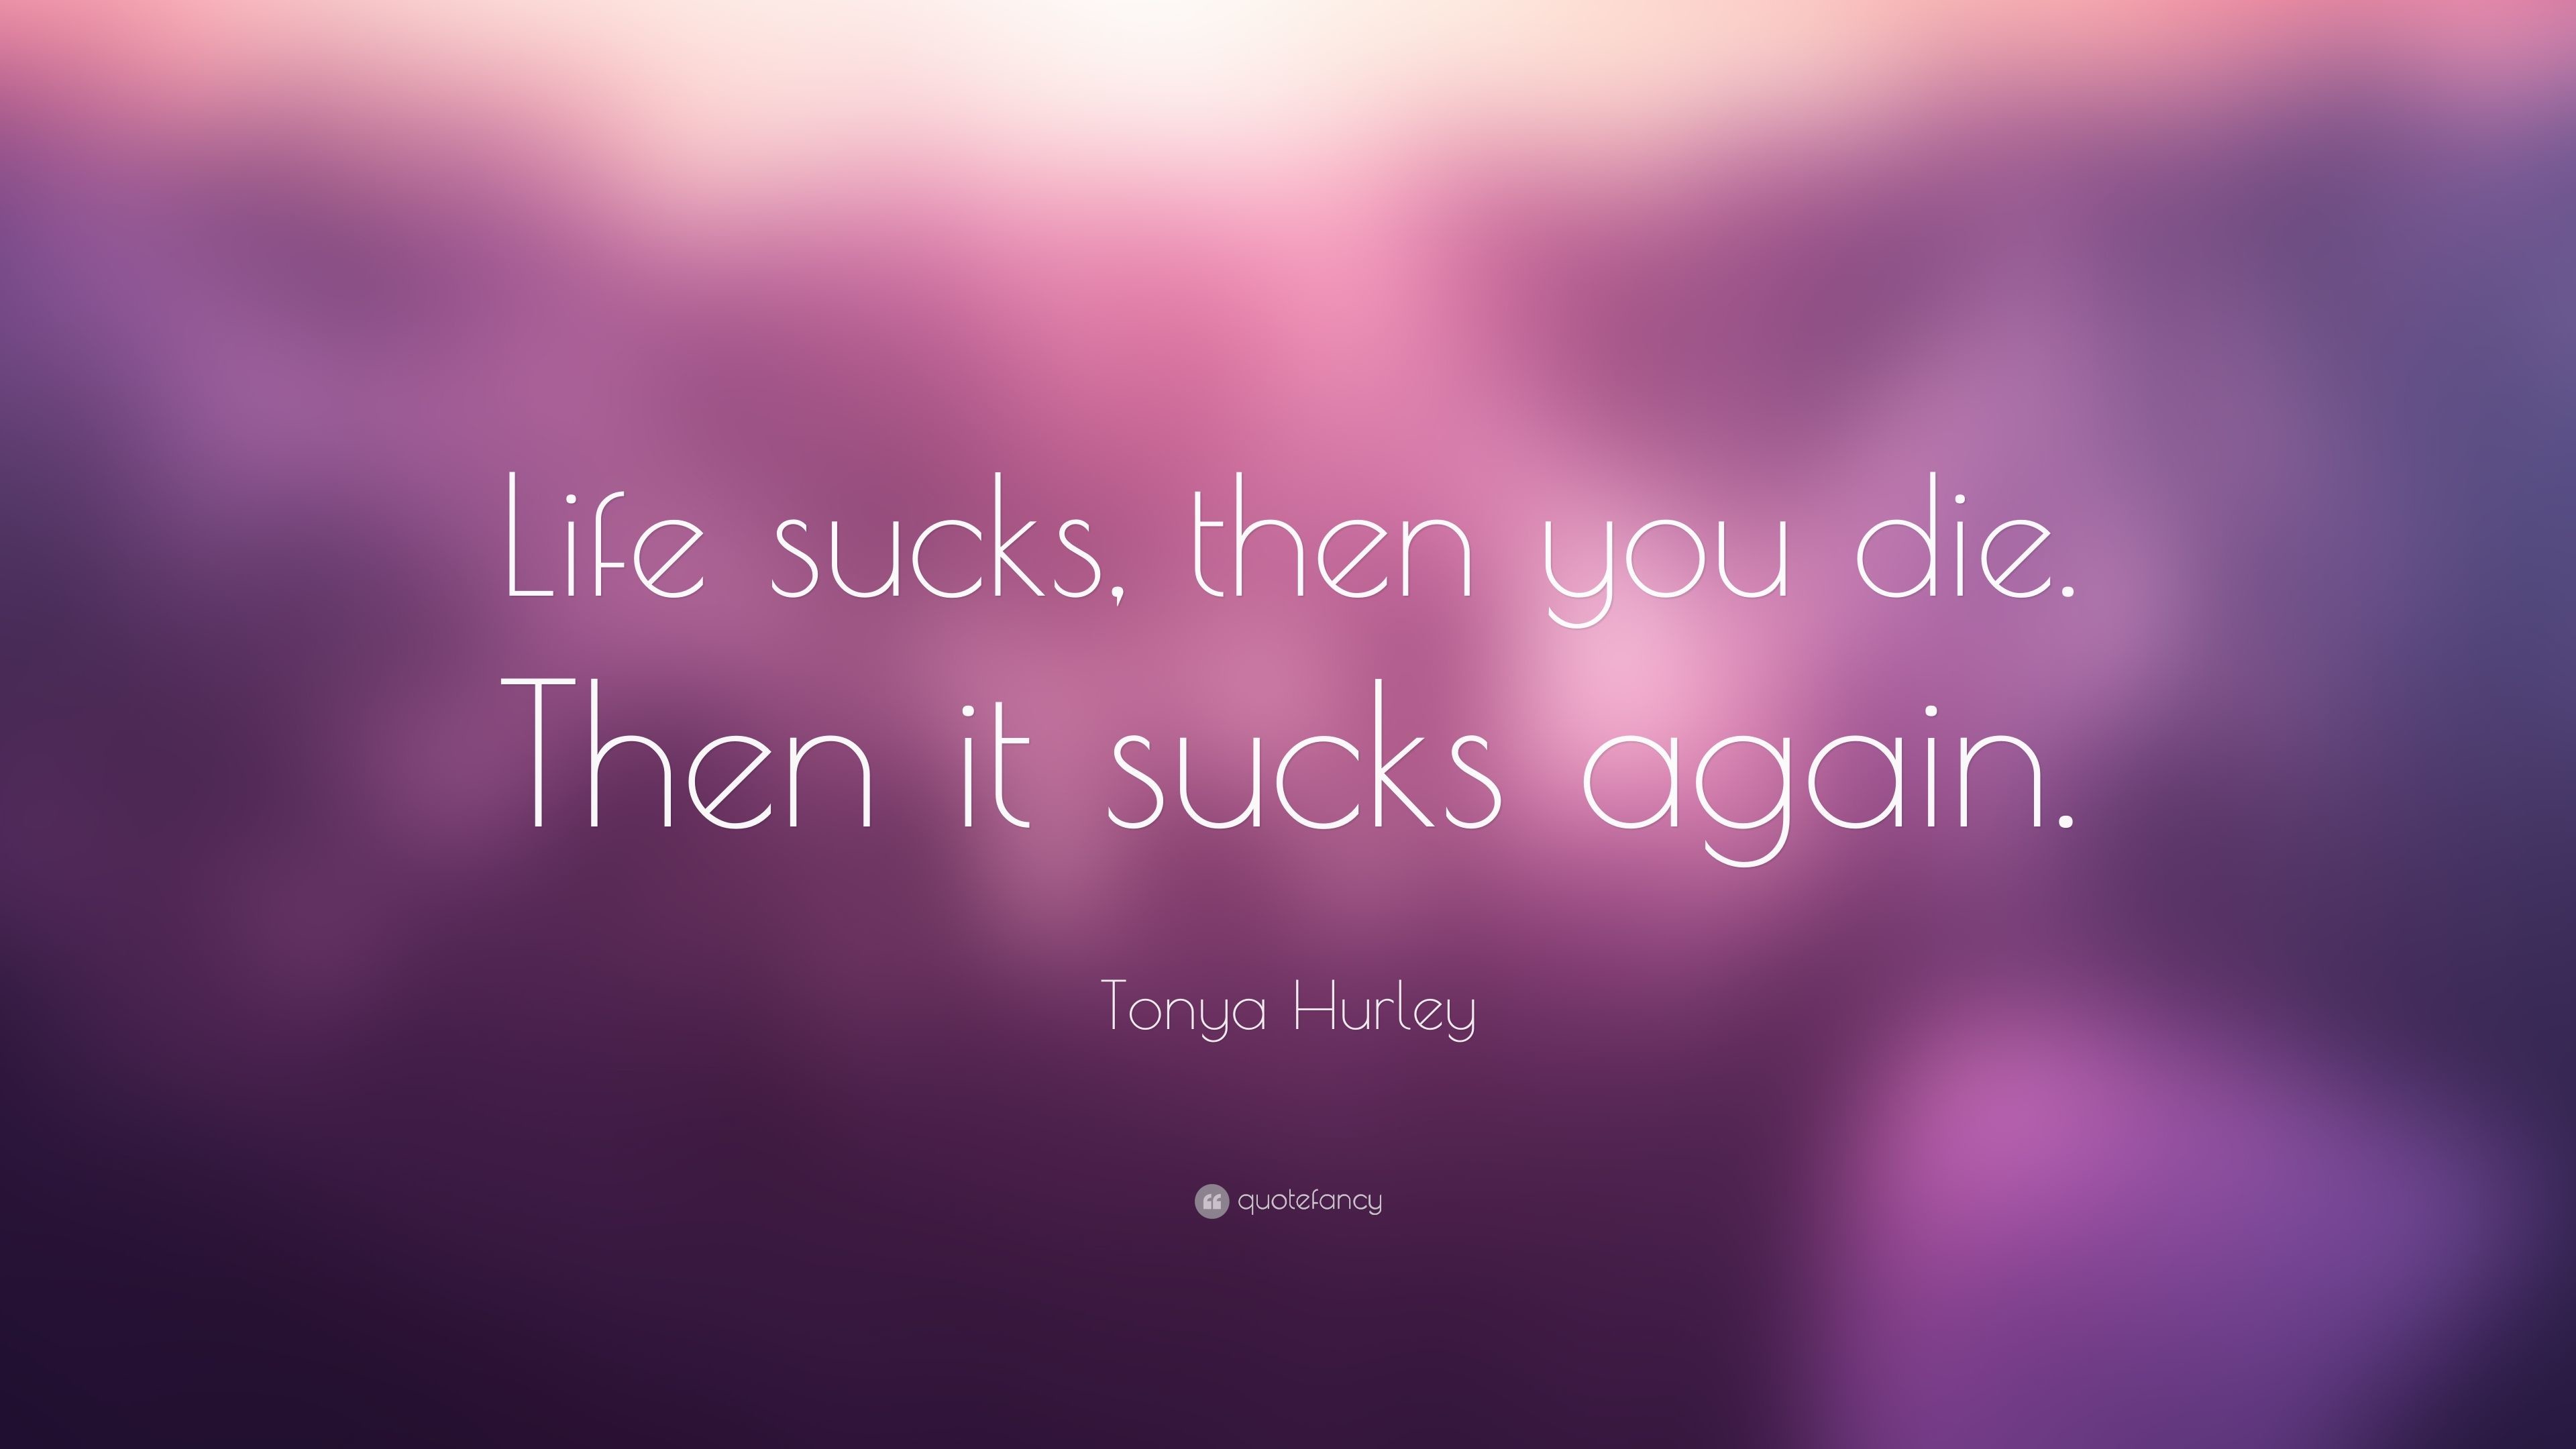 3840x2160 Tonya Hurley Quote: "Life sucks, then you die. 